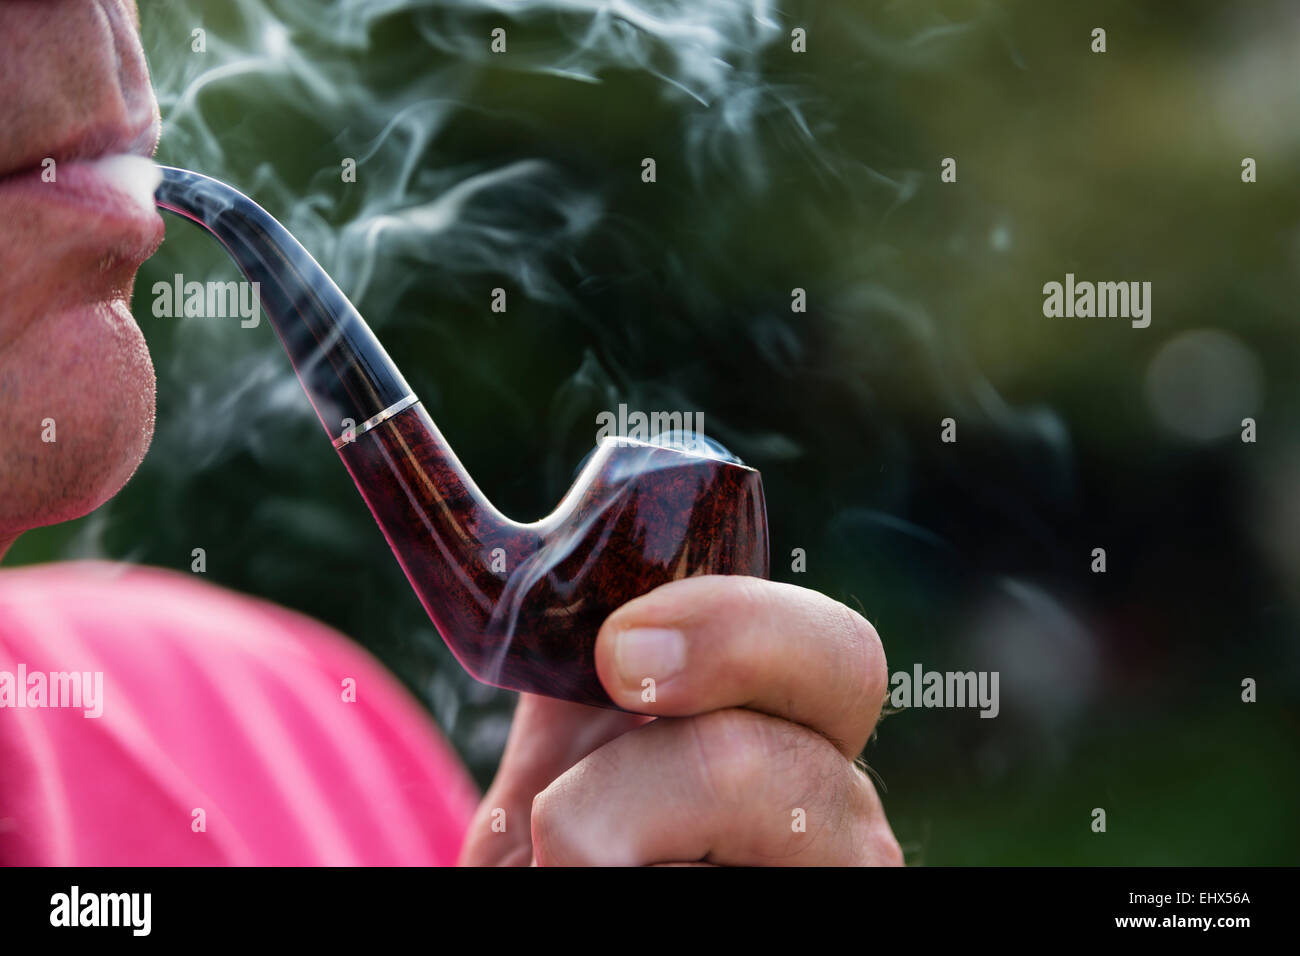 Man smoking pipe Stock Photo